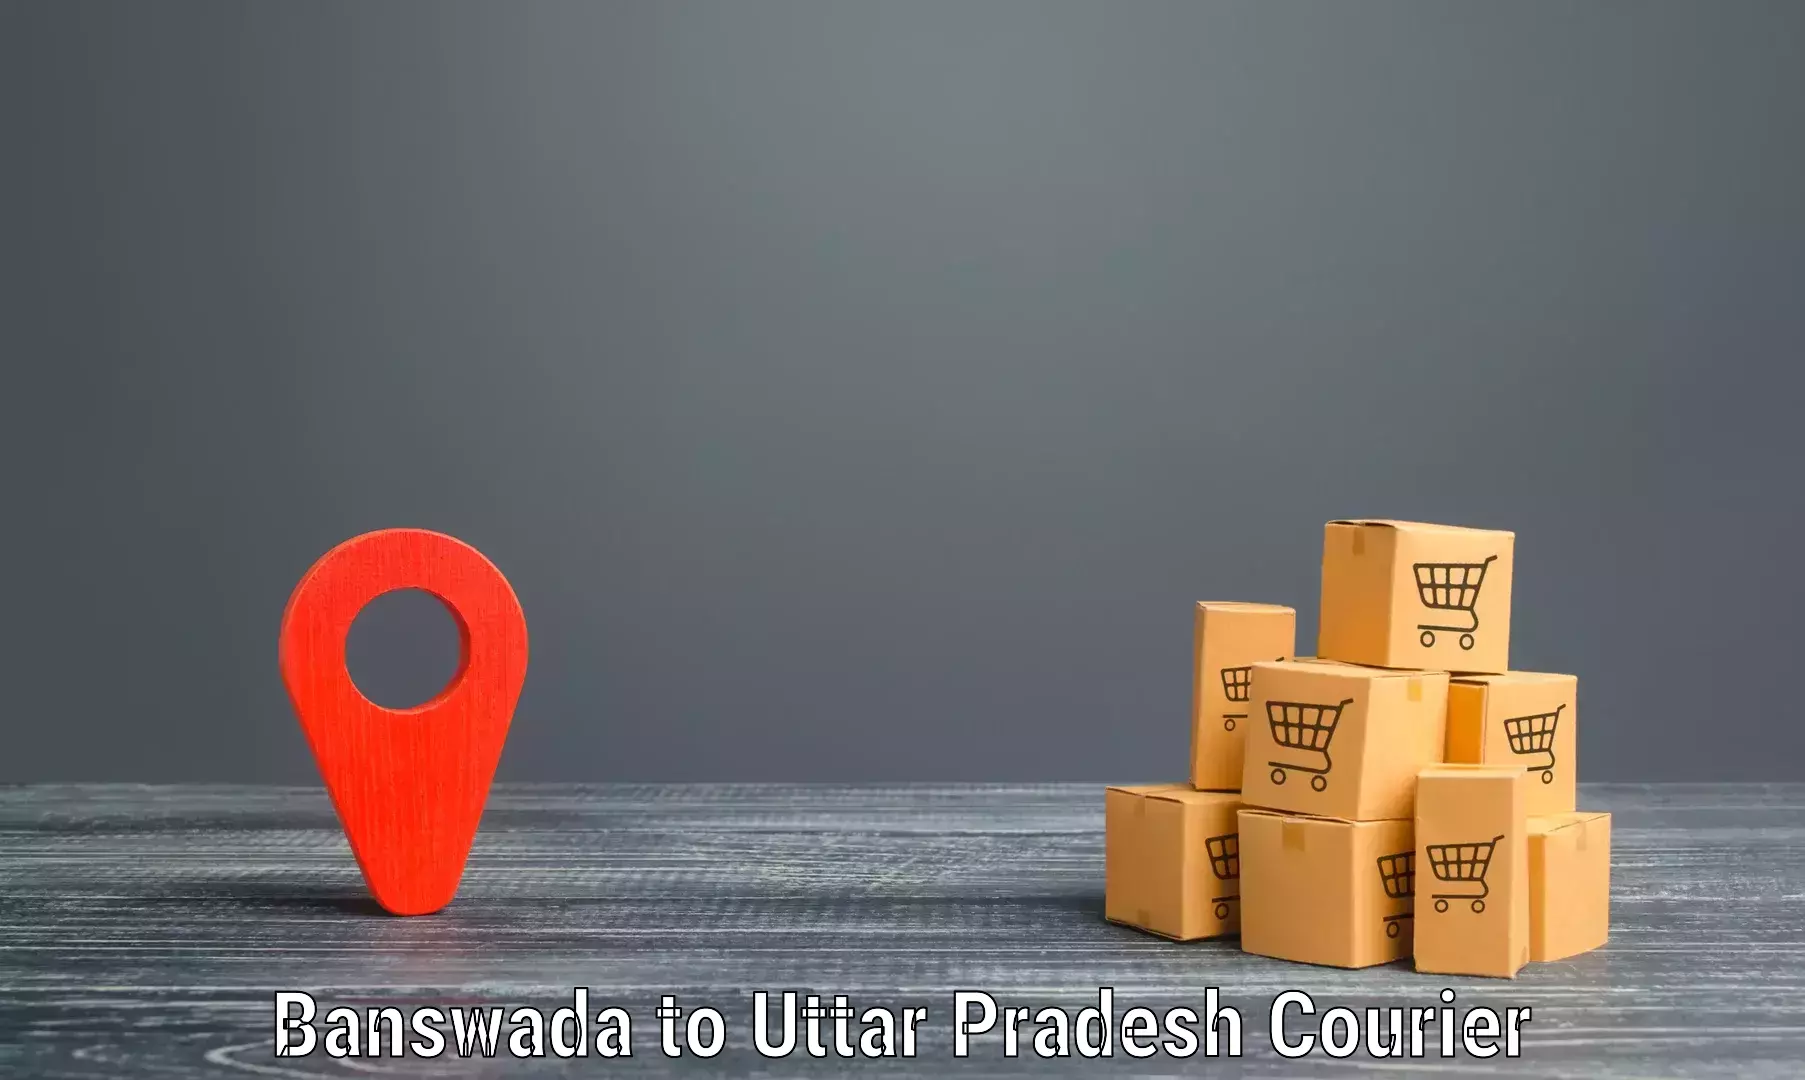 Express logistics service Banswada to Ayodhya